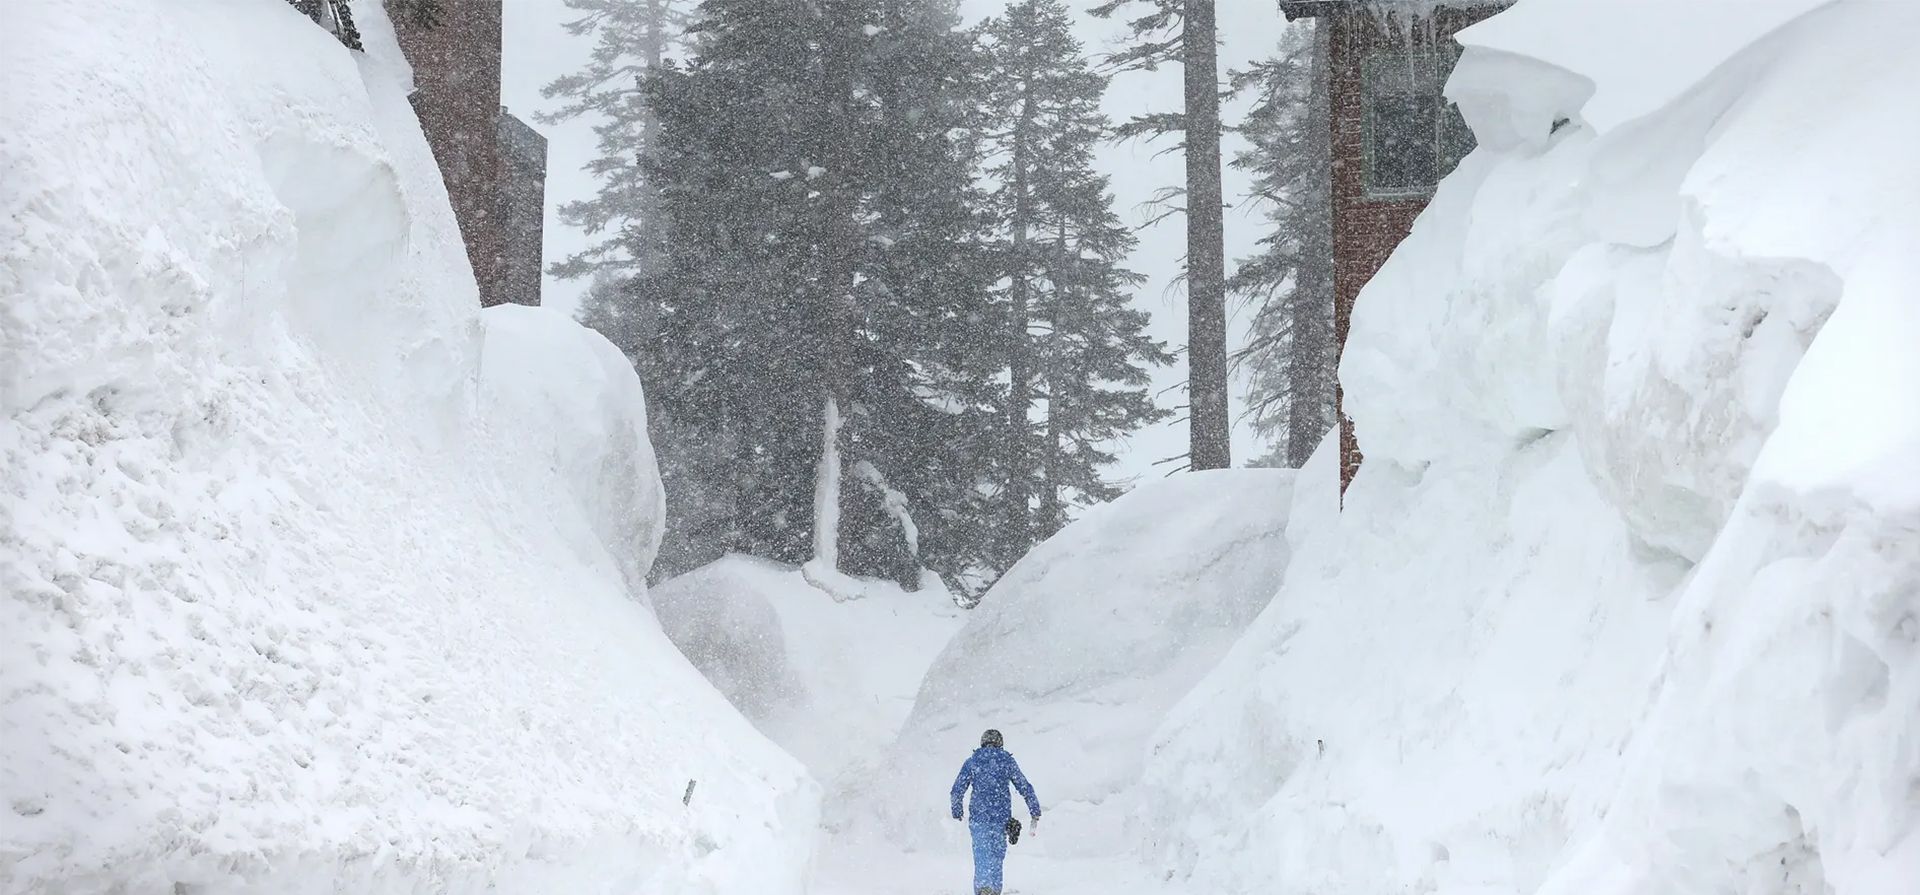 Una persona camina entre bancos de nieve que cubren condominios en las montañas de Sierra Nevada después de otra tormenta. Después de años de sequía, el promedio estatal de nieve acumulada para California puede alcanzar un récord. Fotografía: Mario Tama/Getty Images